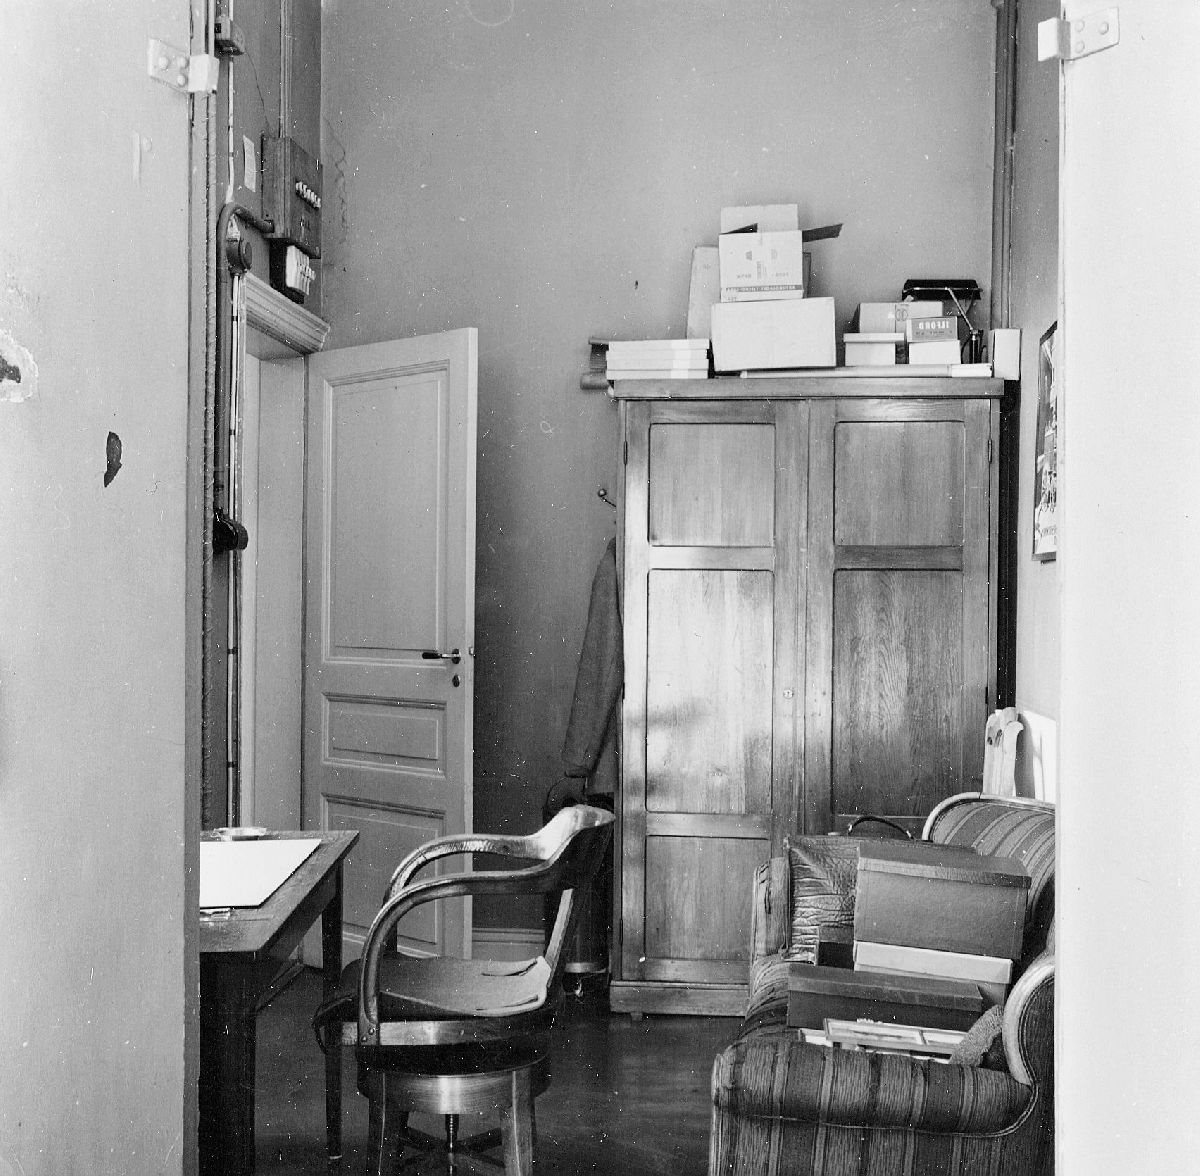 Genomgångsrum från förstugan på 2 tr. till rum nr 4 och de
historiska samlingarna (fotograf Yngve Hellströms arbetsrum
1953-1954).